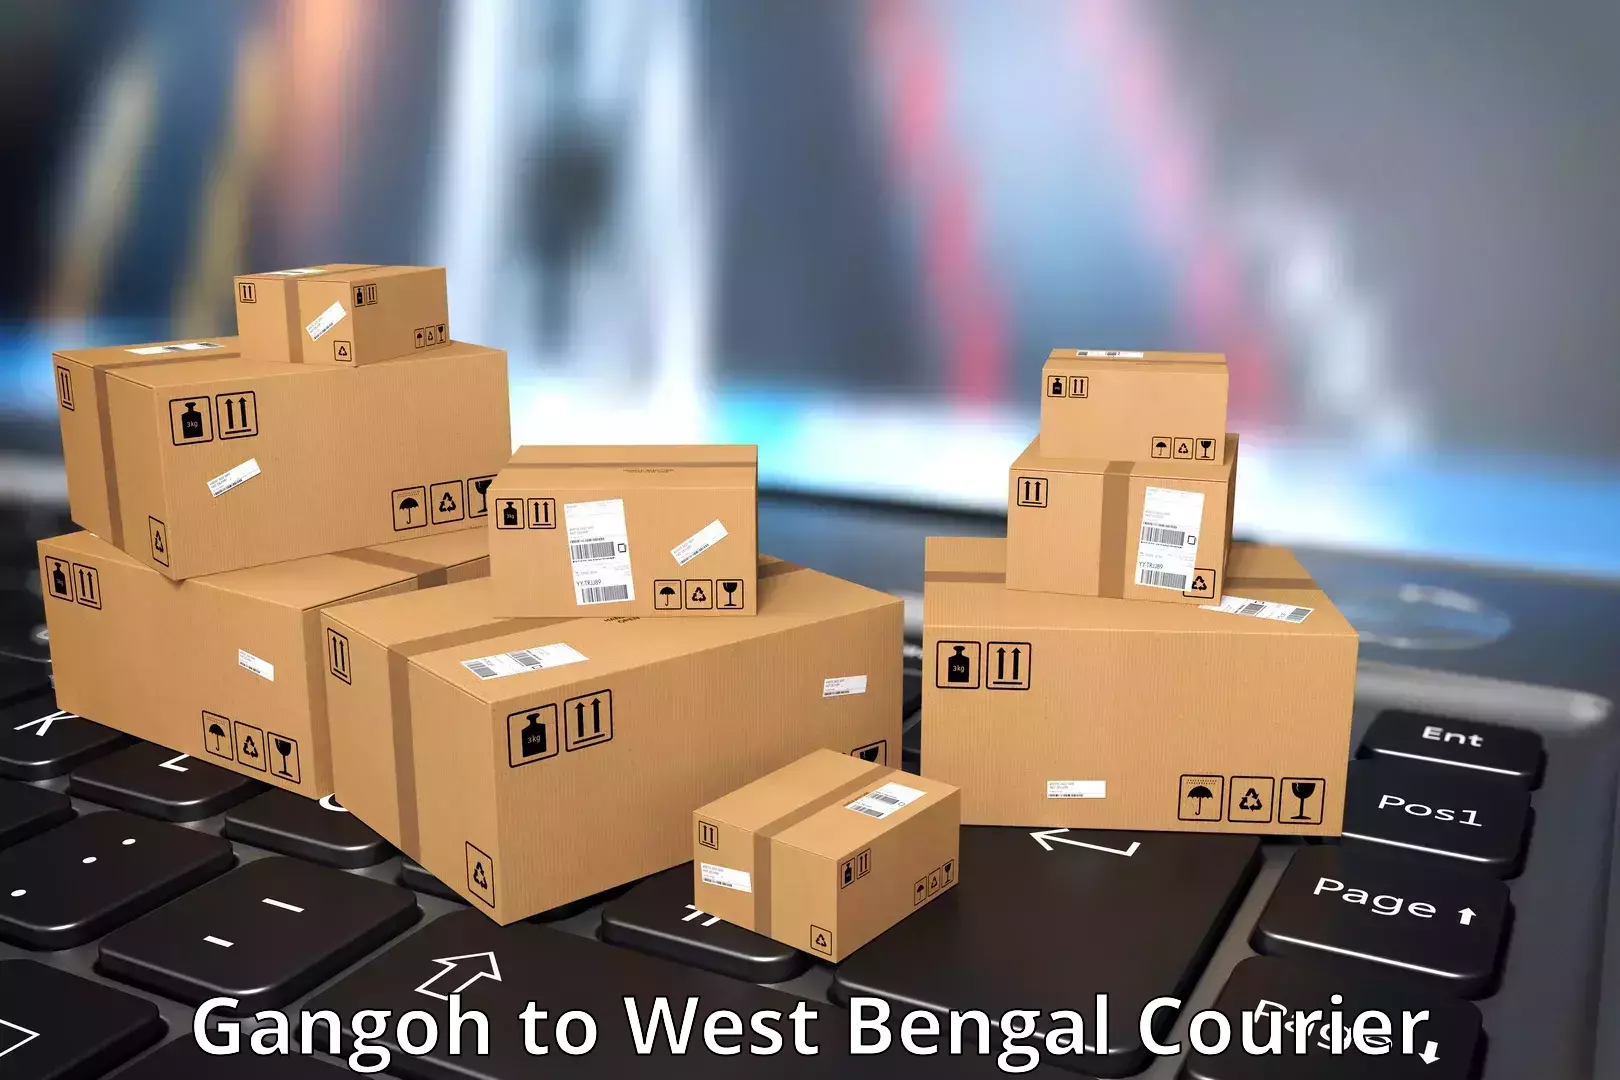 Courier service comparison Gangoh to Kalyani